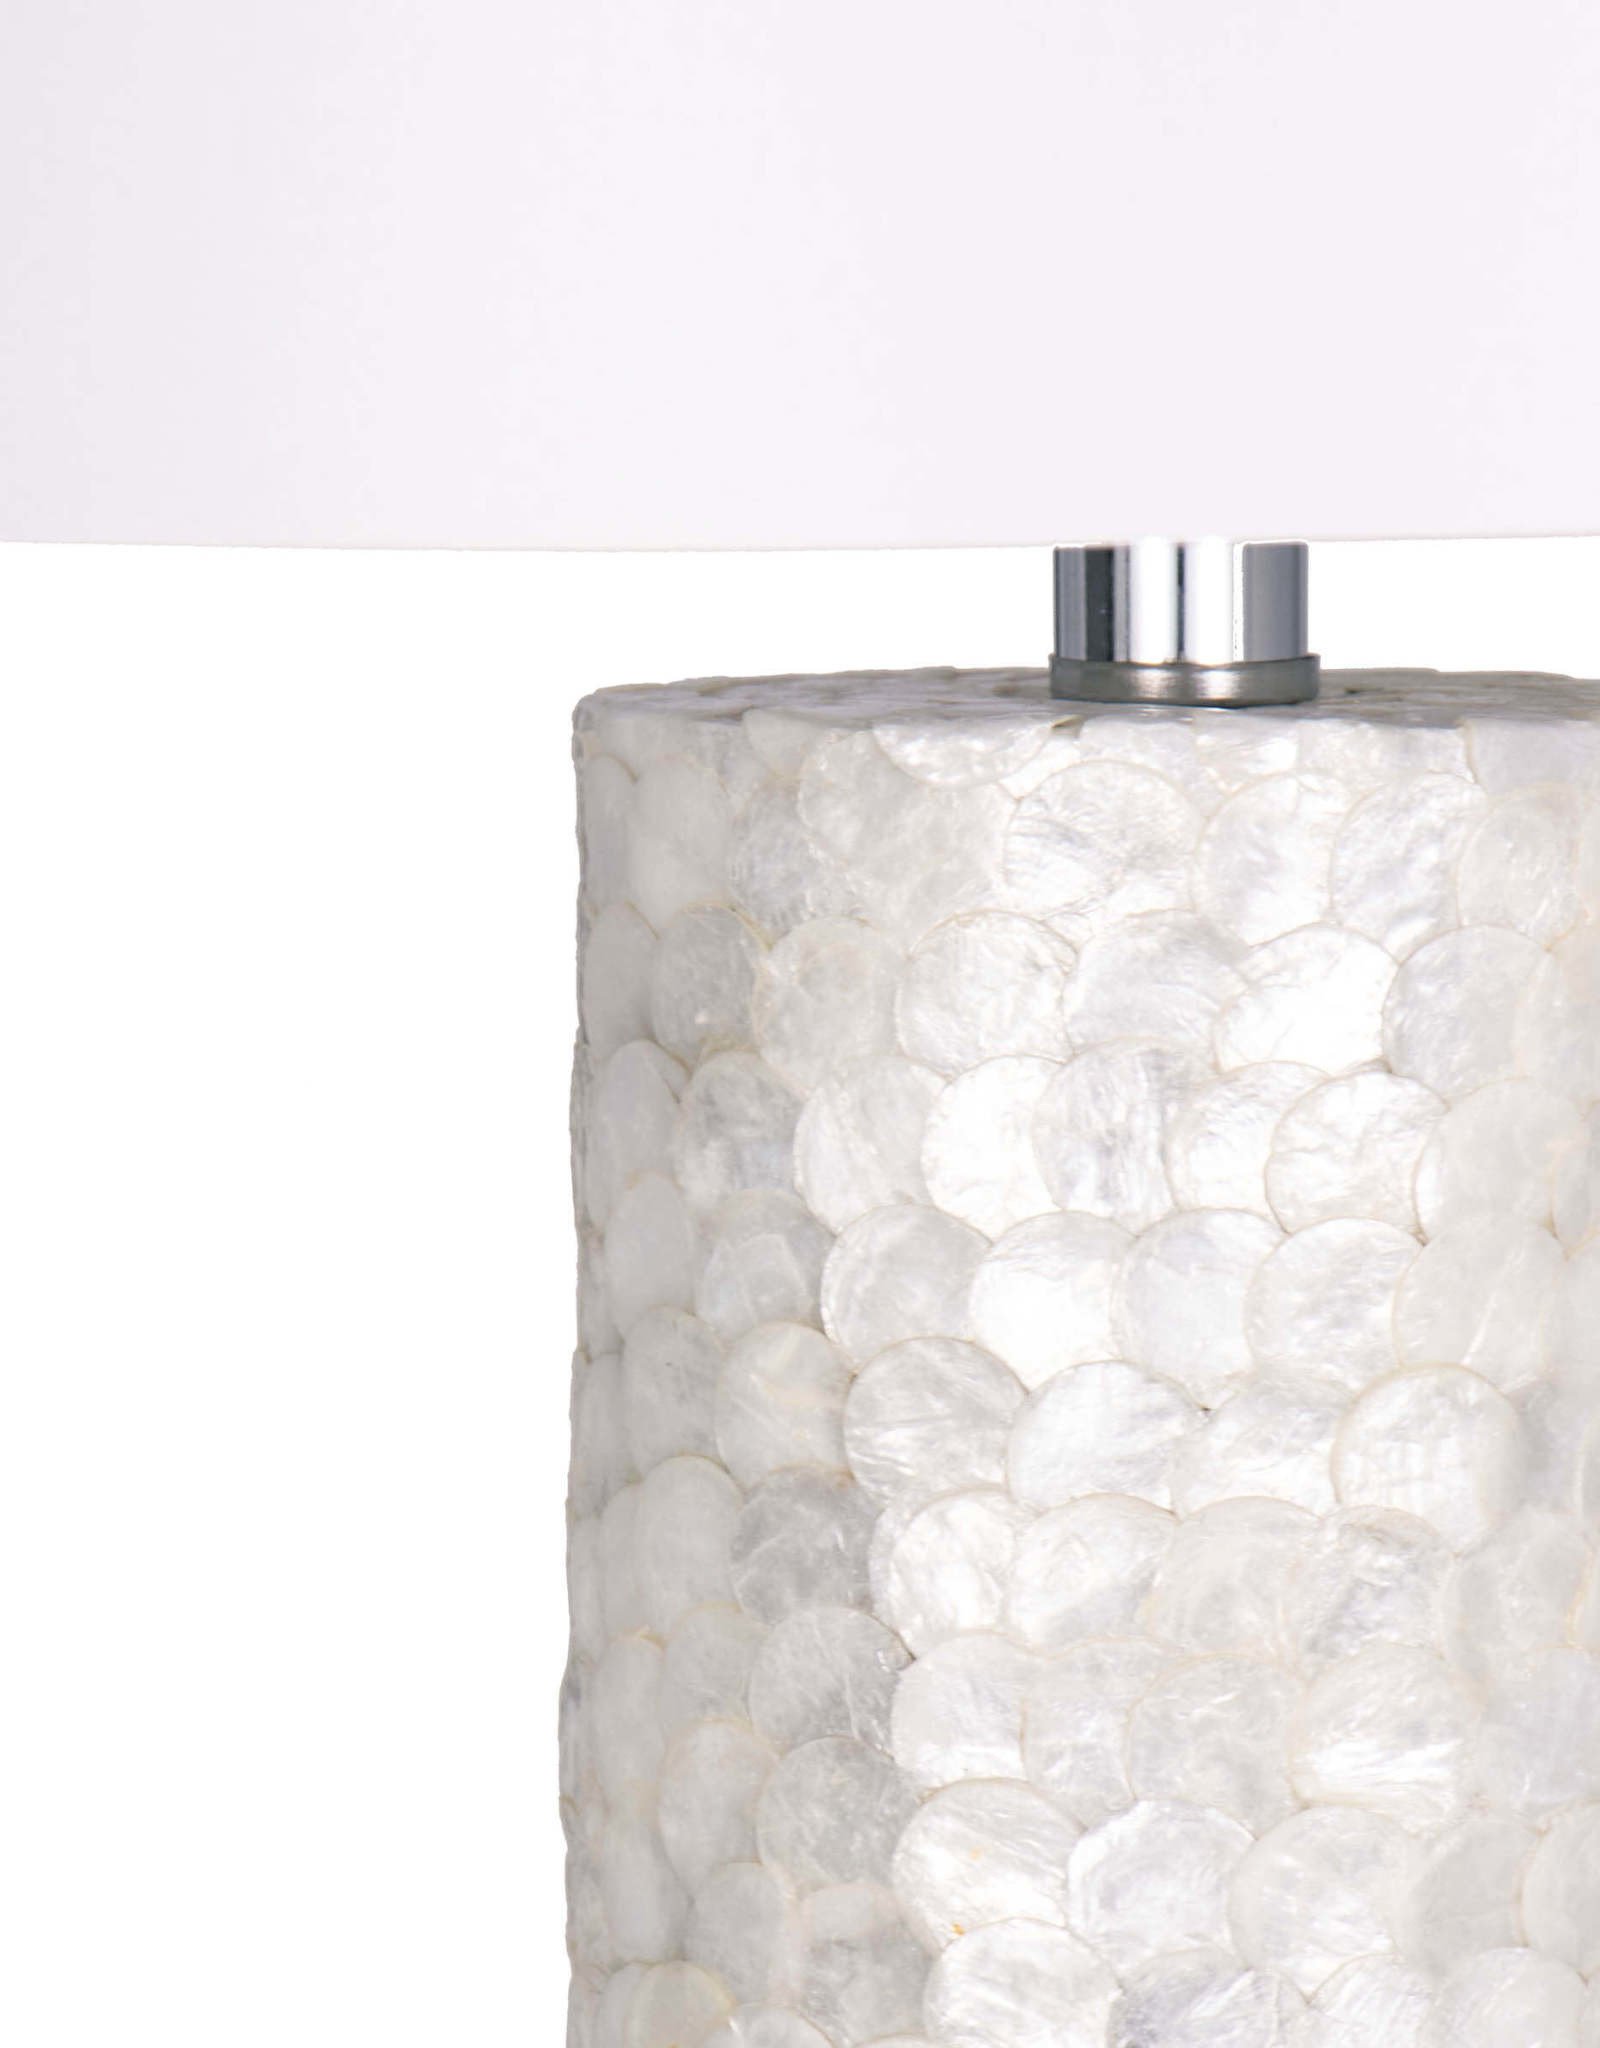 Regina Andrew Design Scalloped Capiz Table Lamp